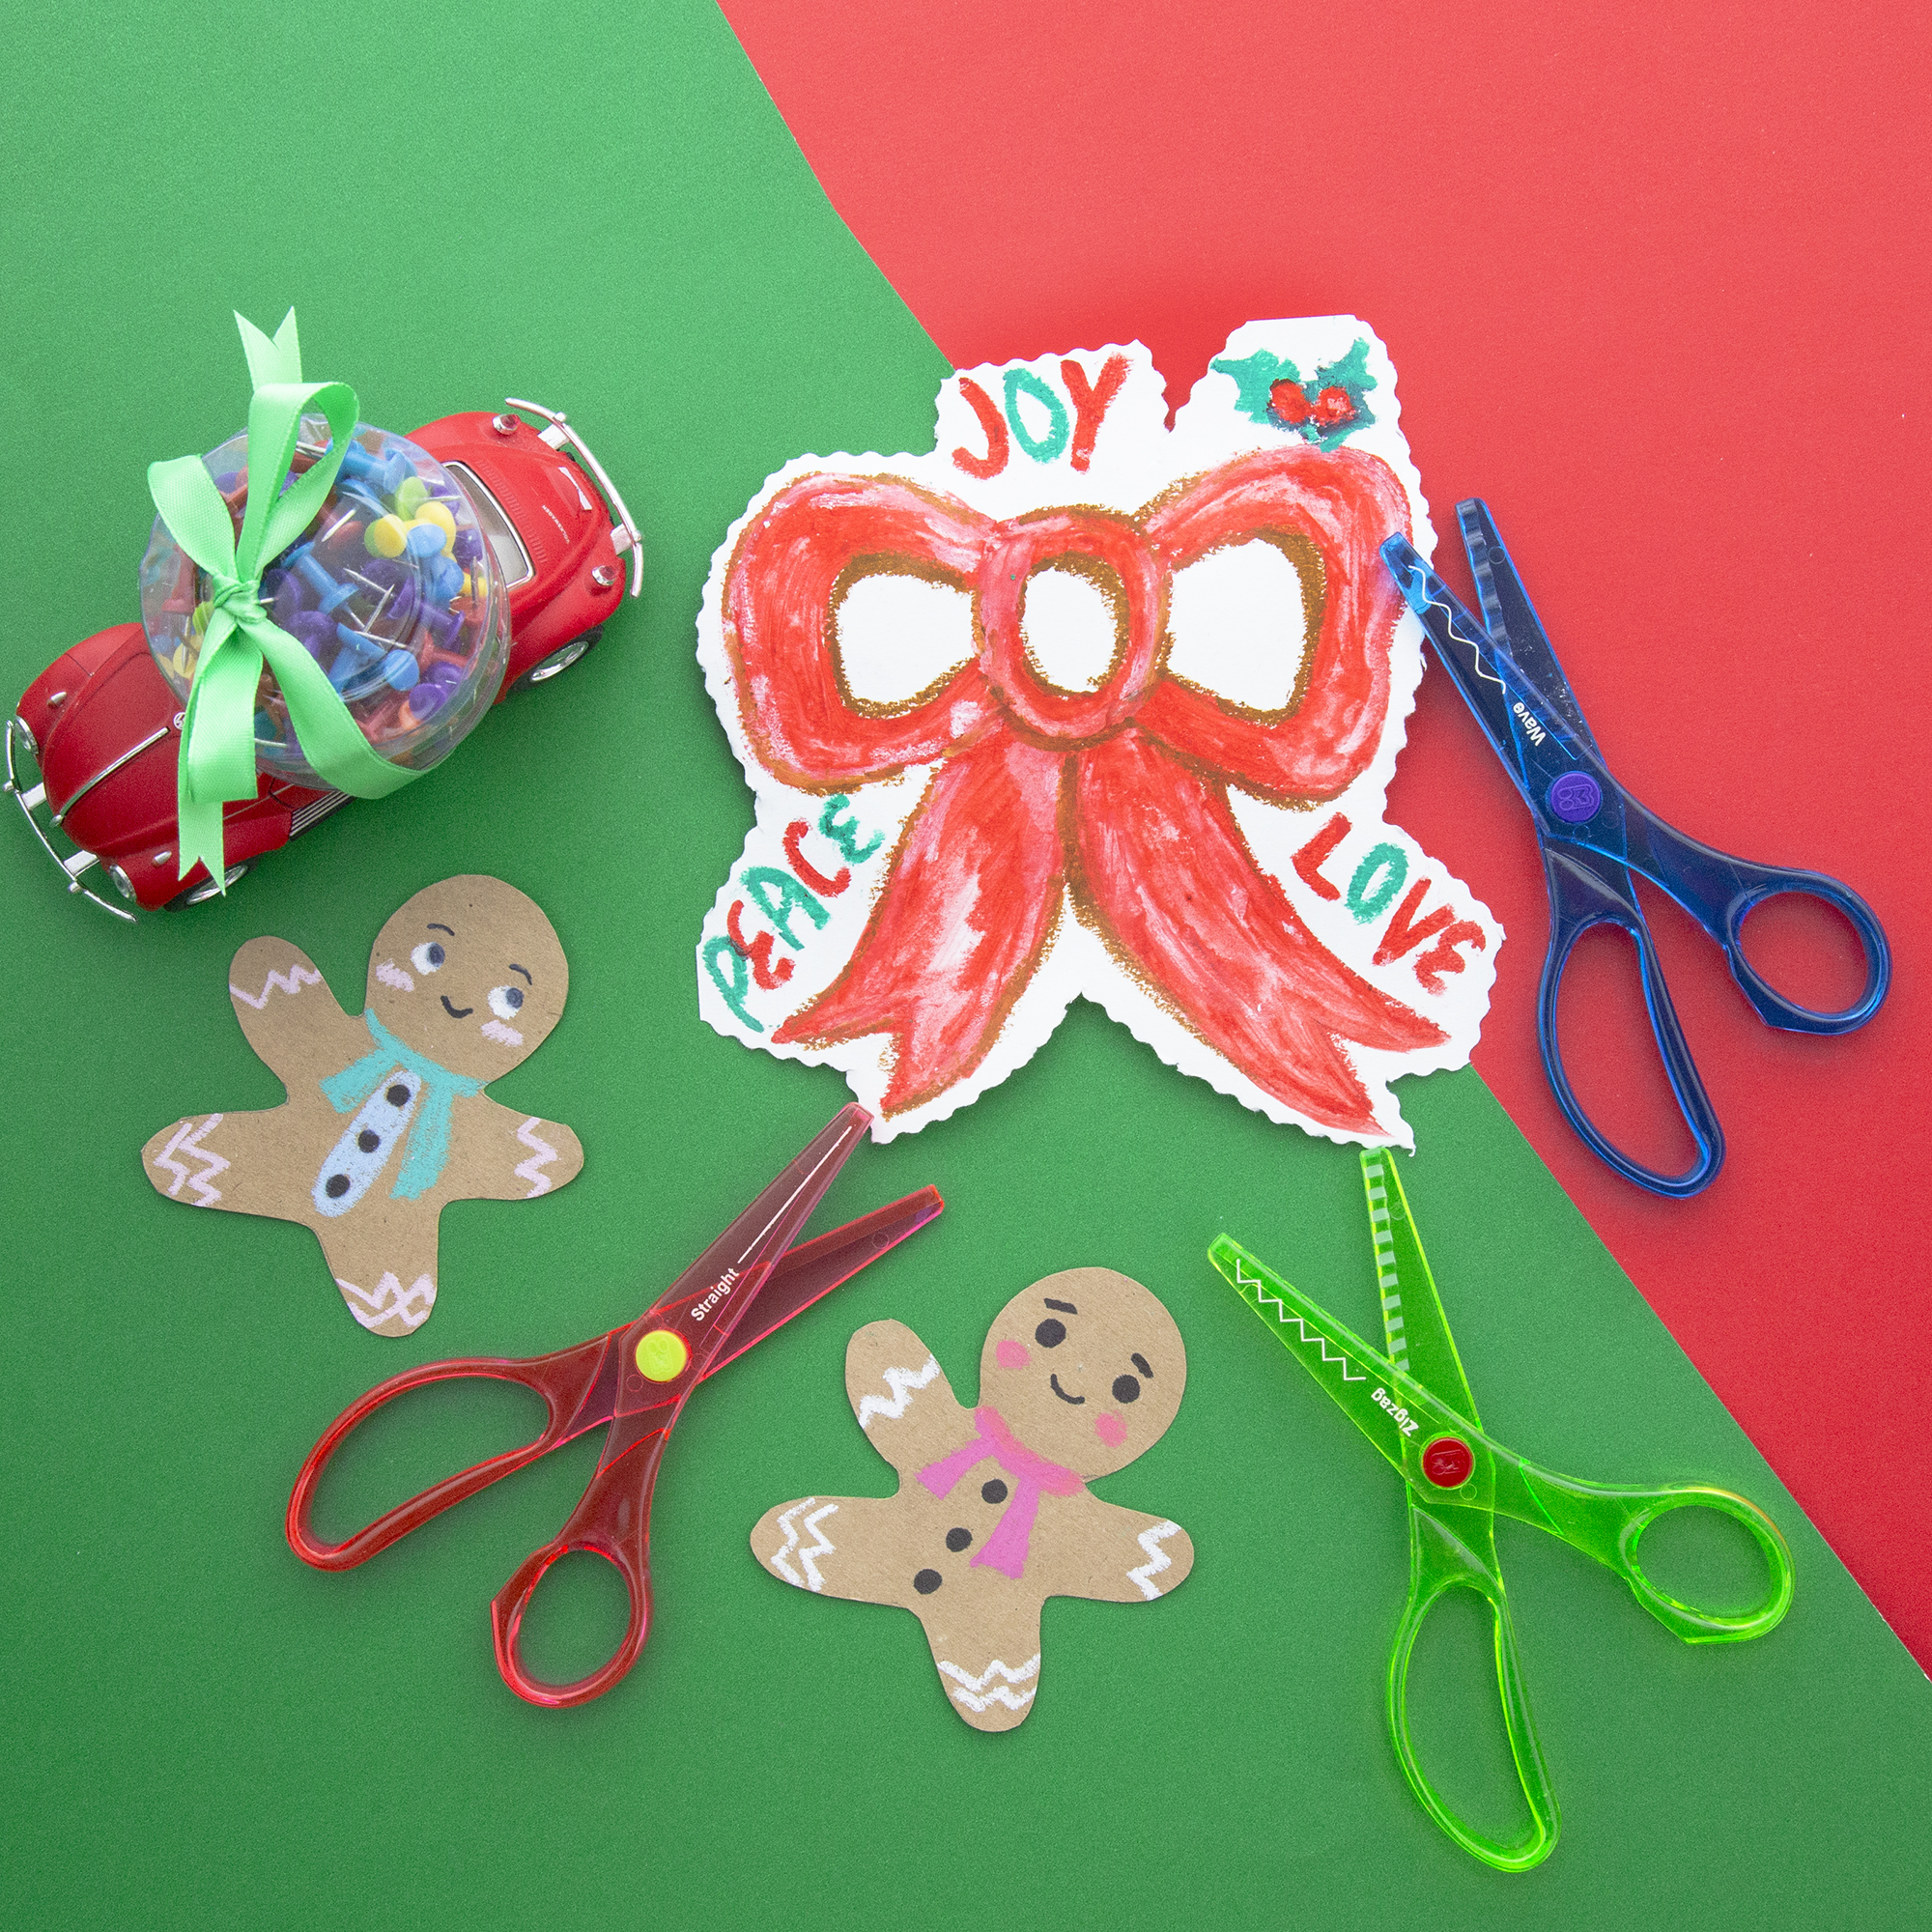 Kids,Toddlers Safe Tip Paper Scissors,Safety Rule Blade Craft